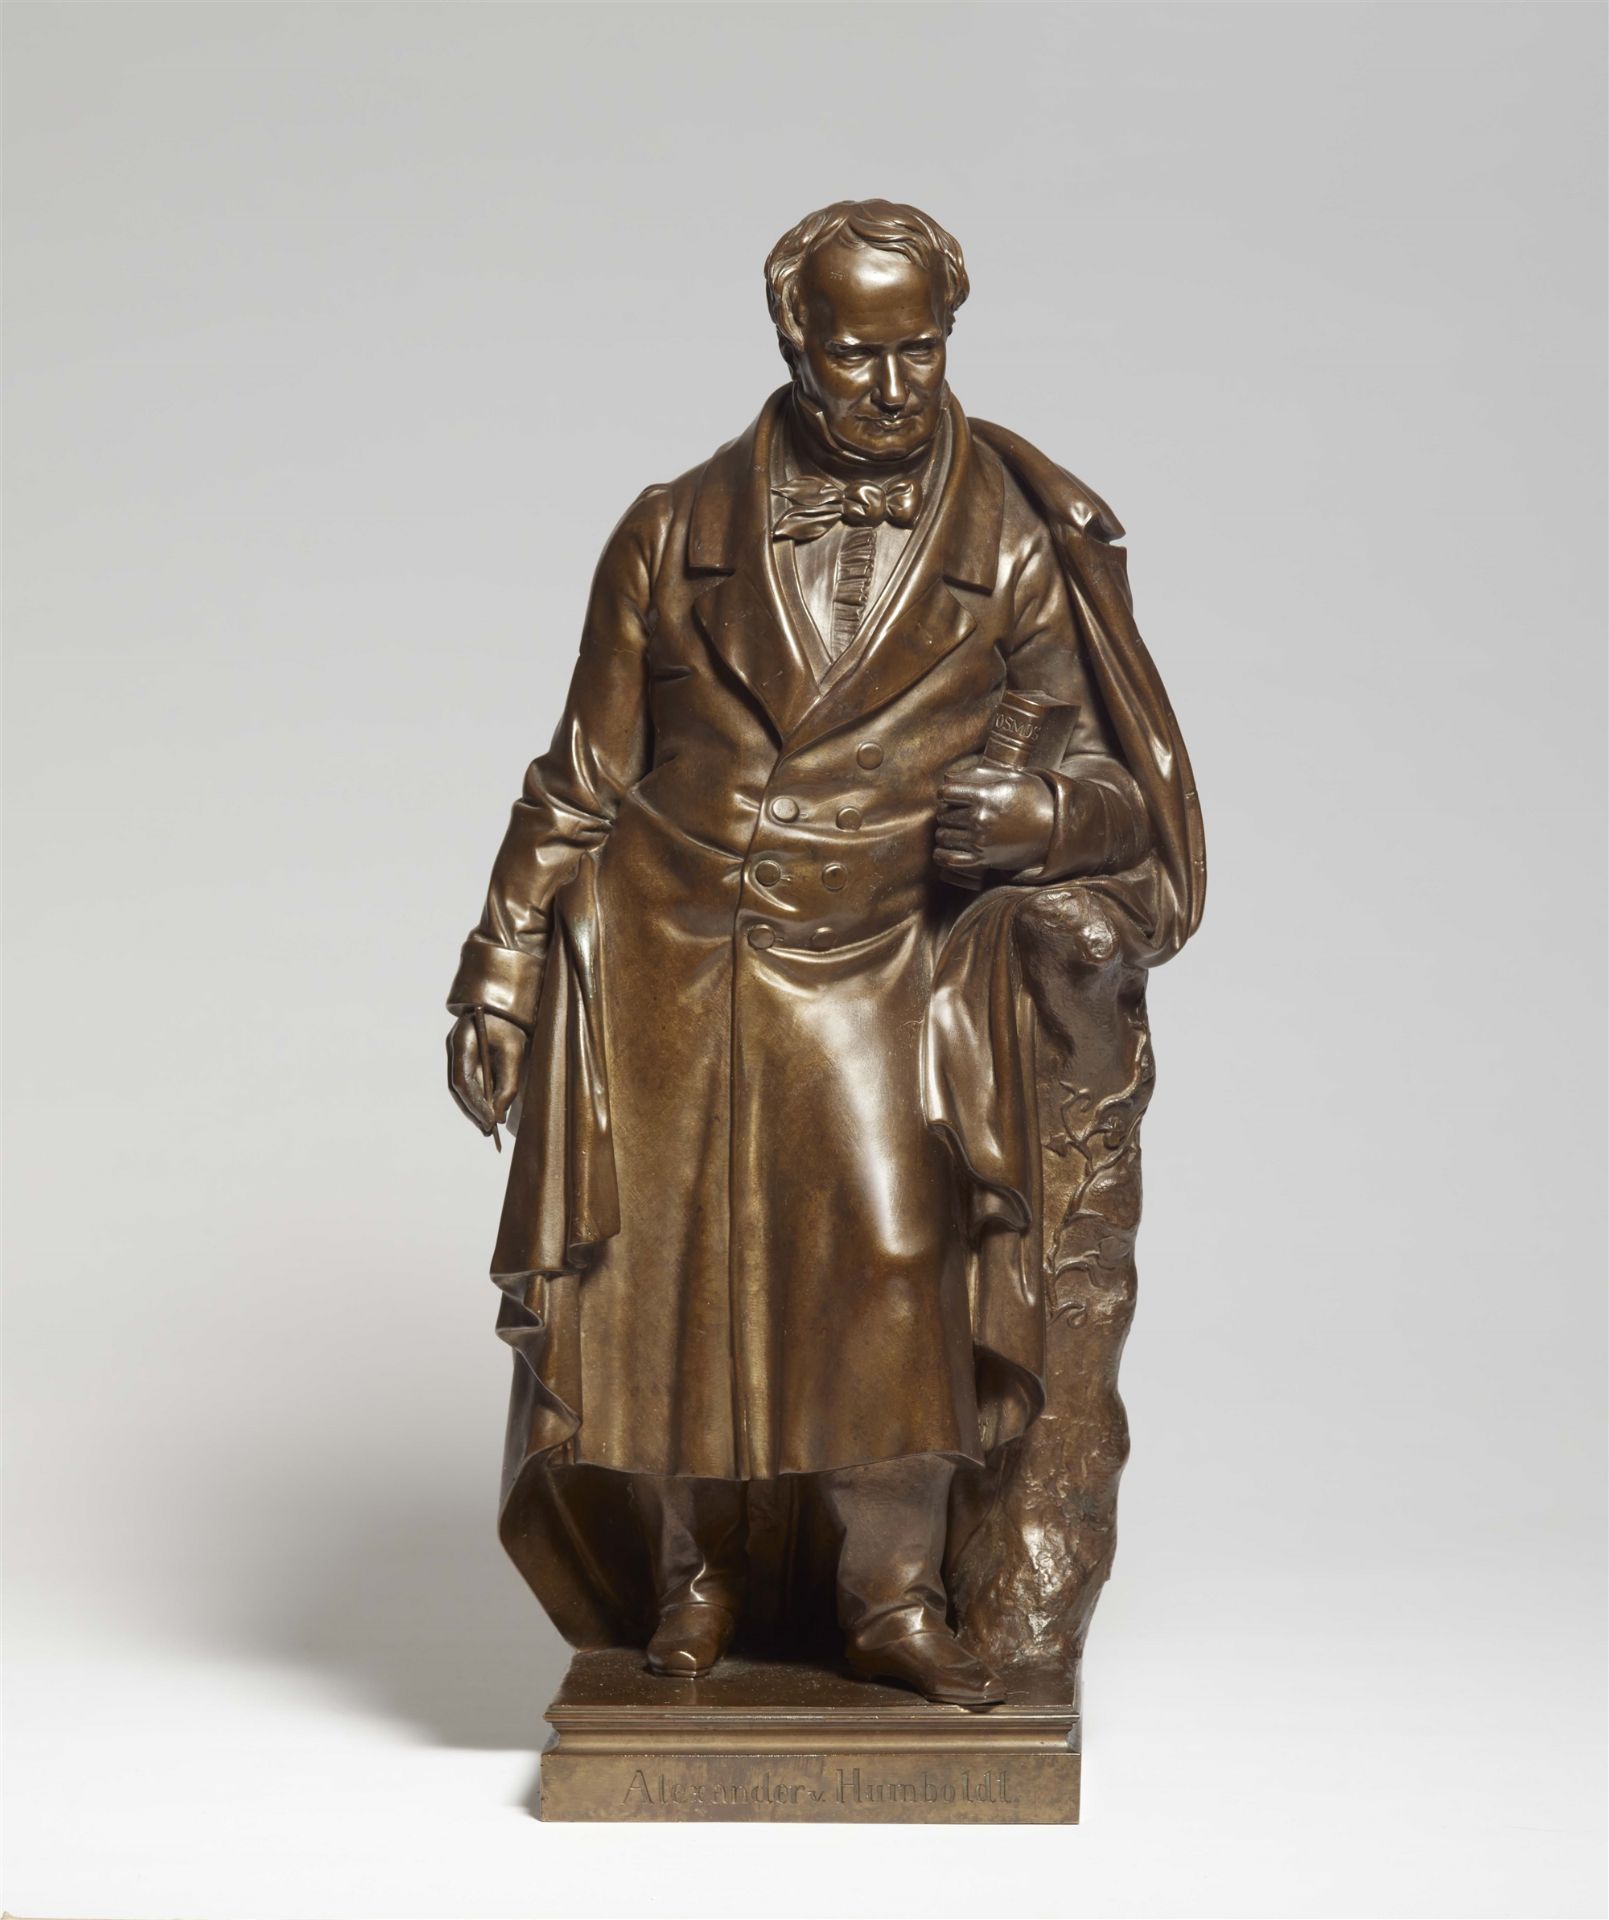 Museale Bronzeplastik "Alexander v. Humboldt."